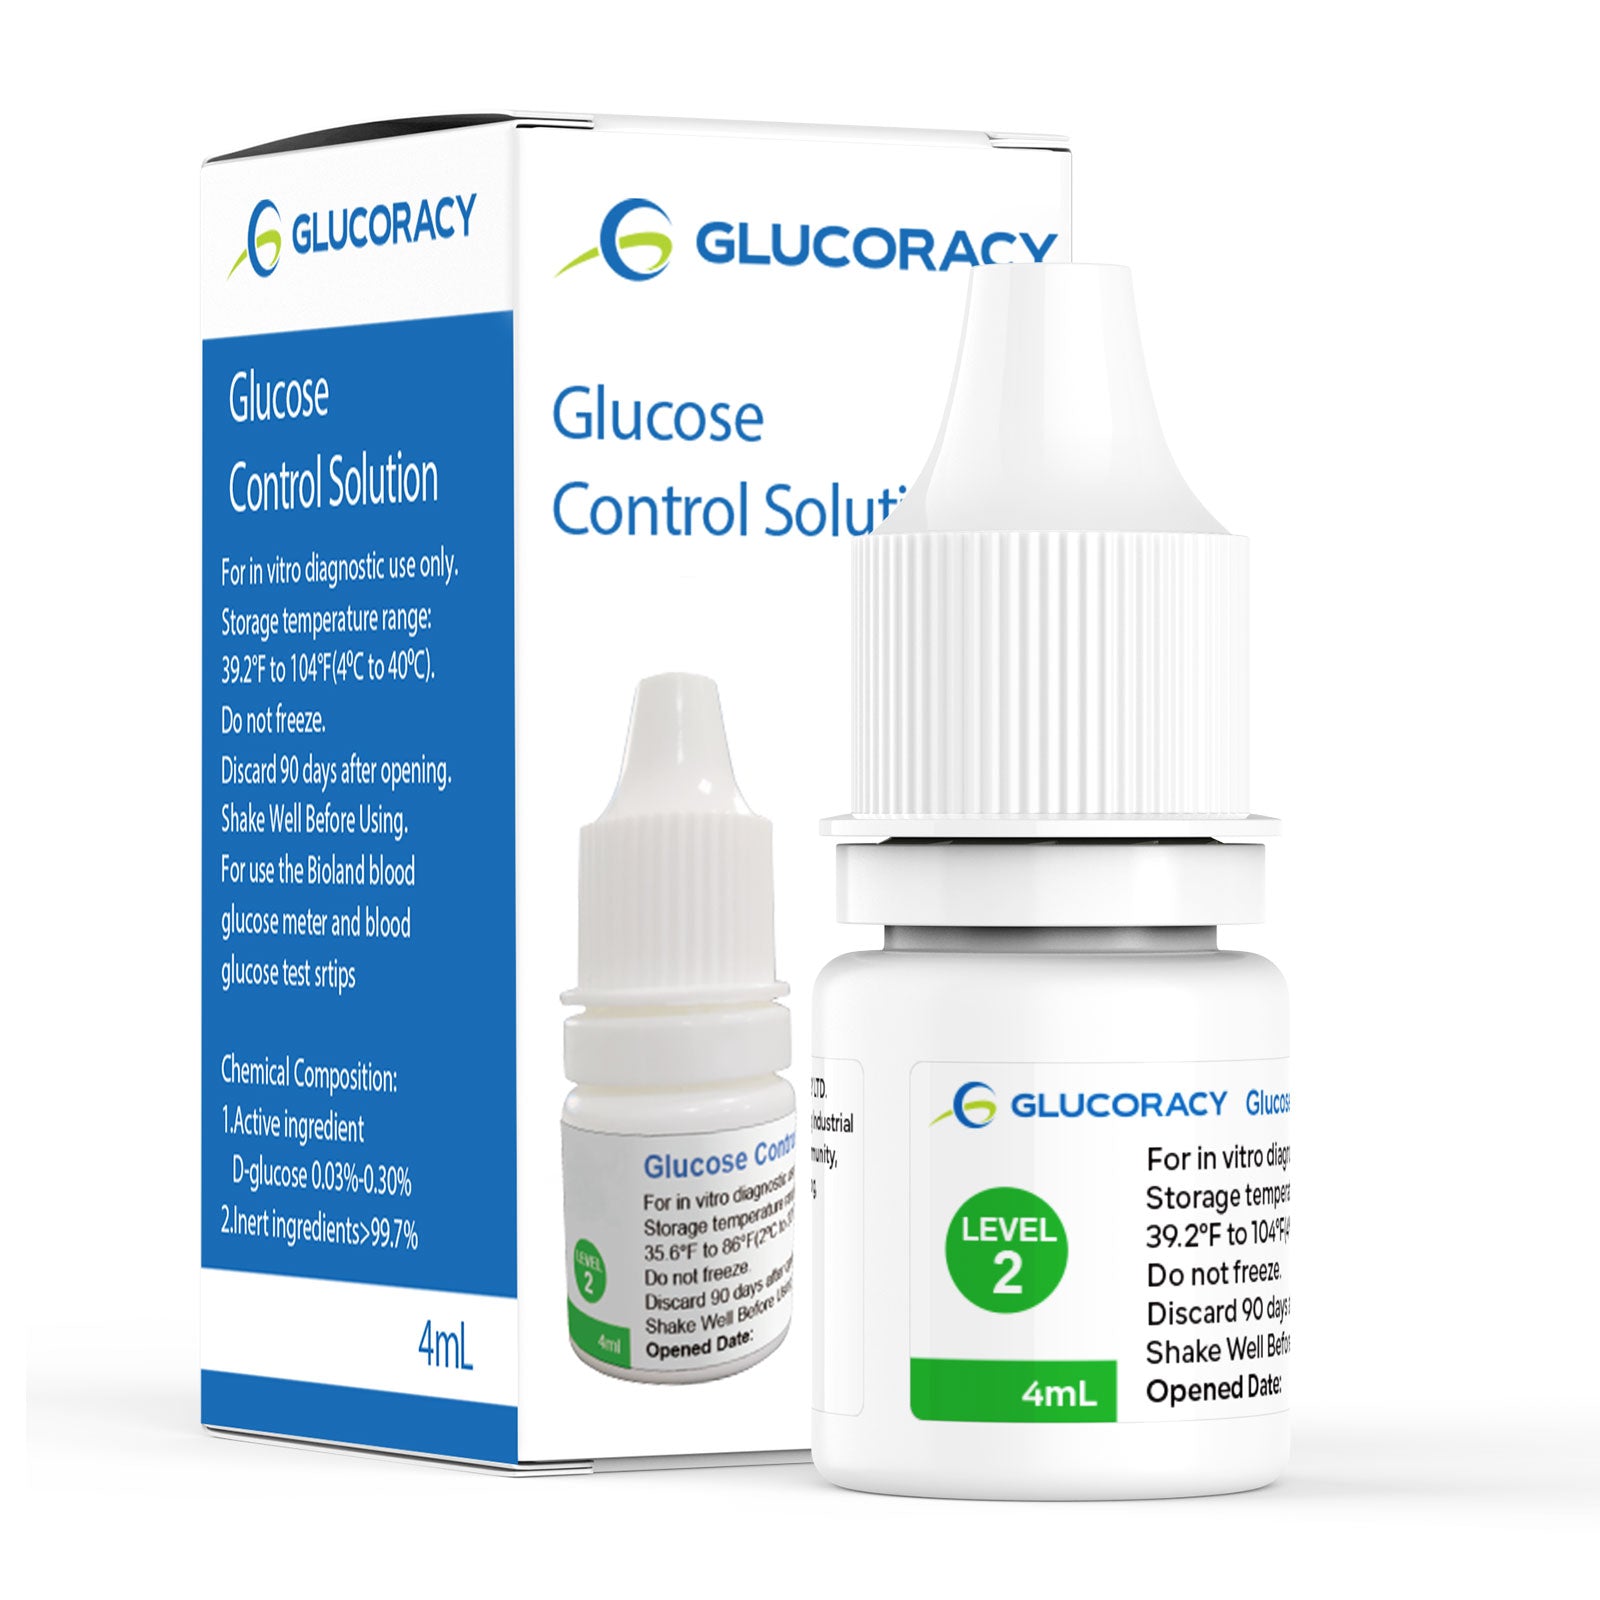 Glucoracy g-425-2 Glucose Control Solution